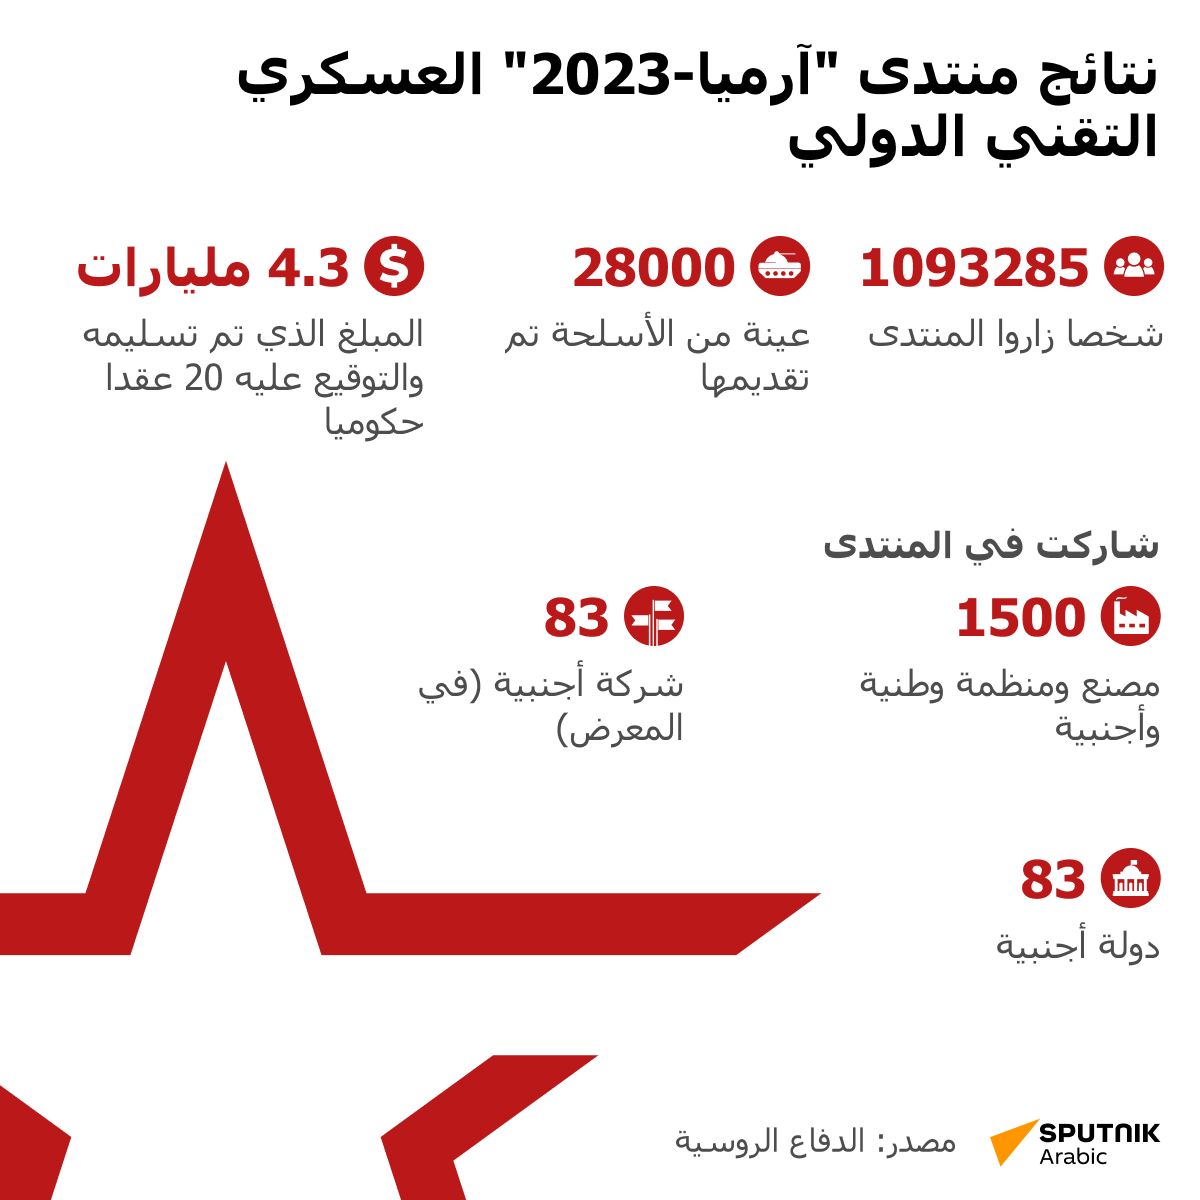 نتائج منتدى آرميا-2023 العسكري التقني الدولي  - سبوتنيك عربي